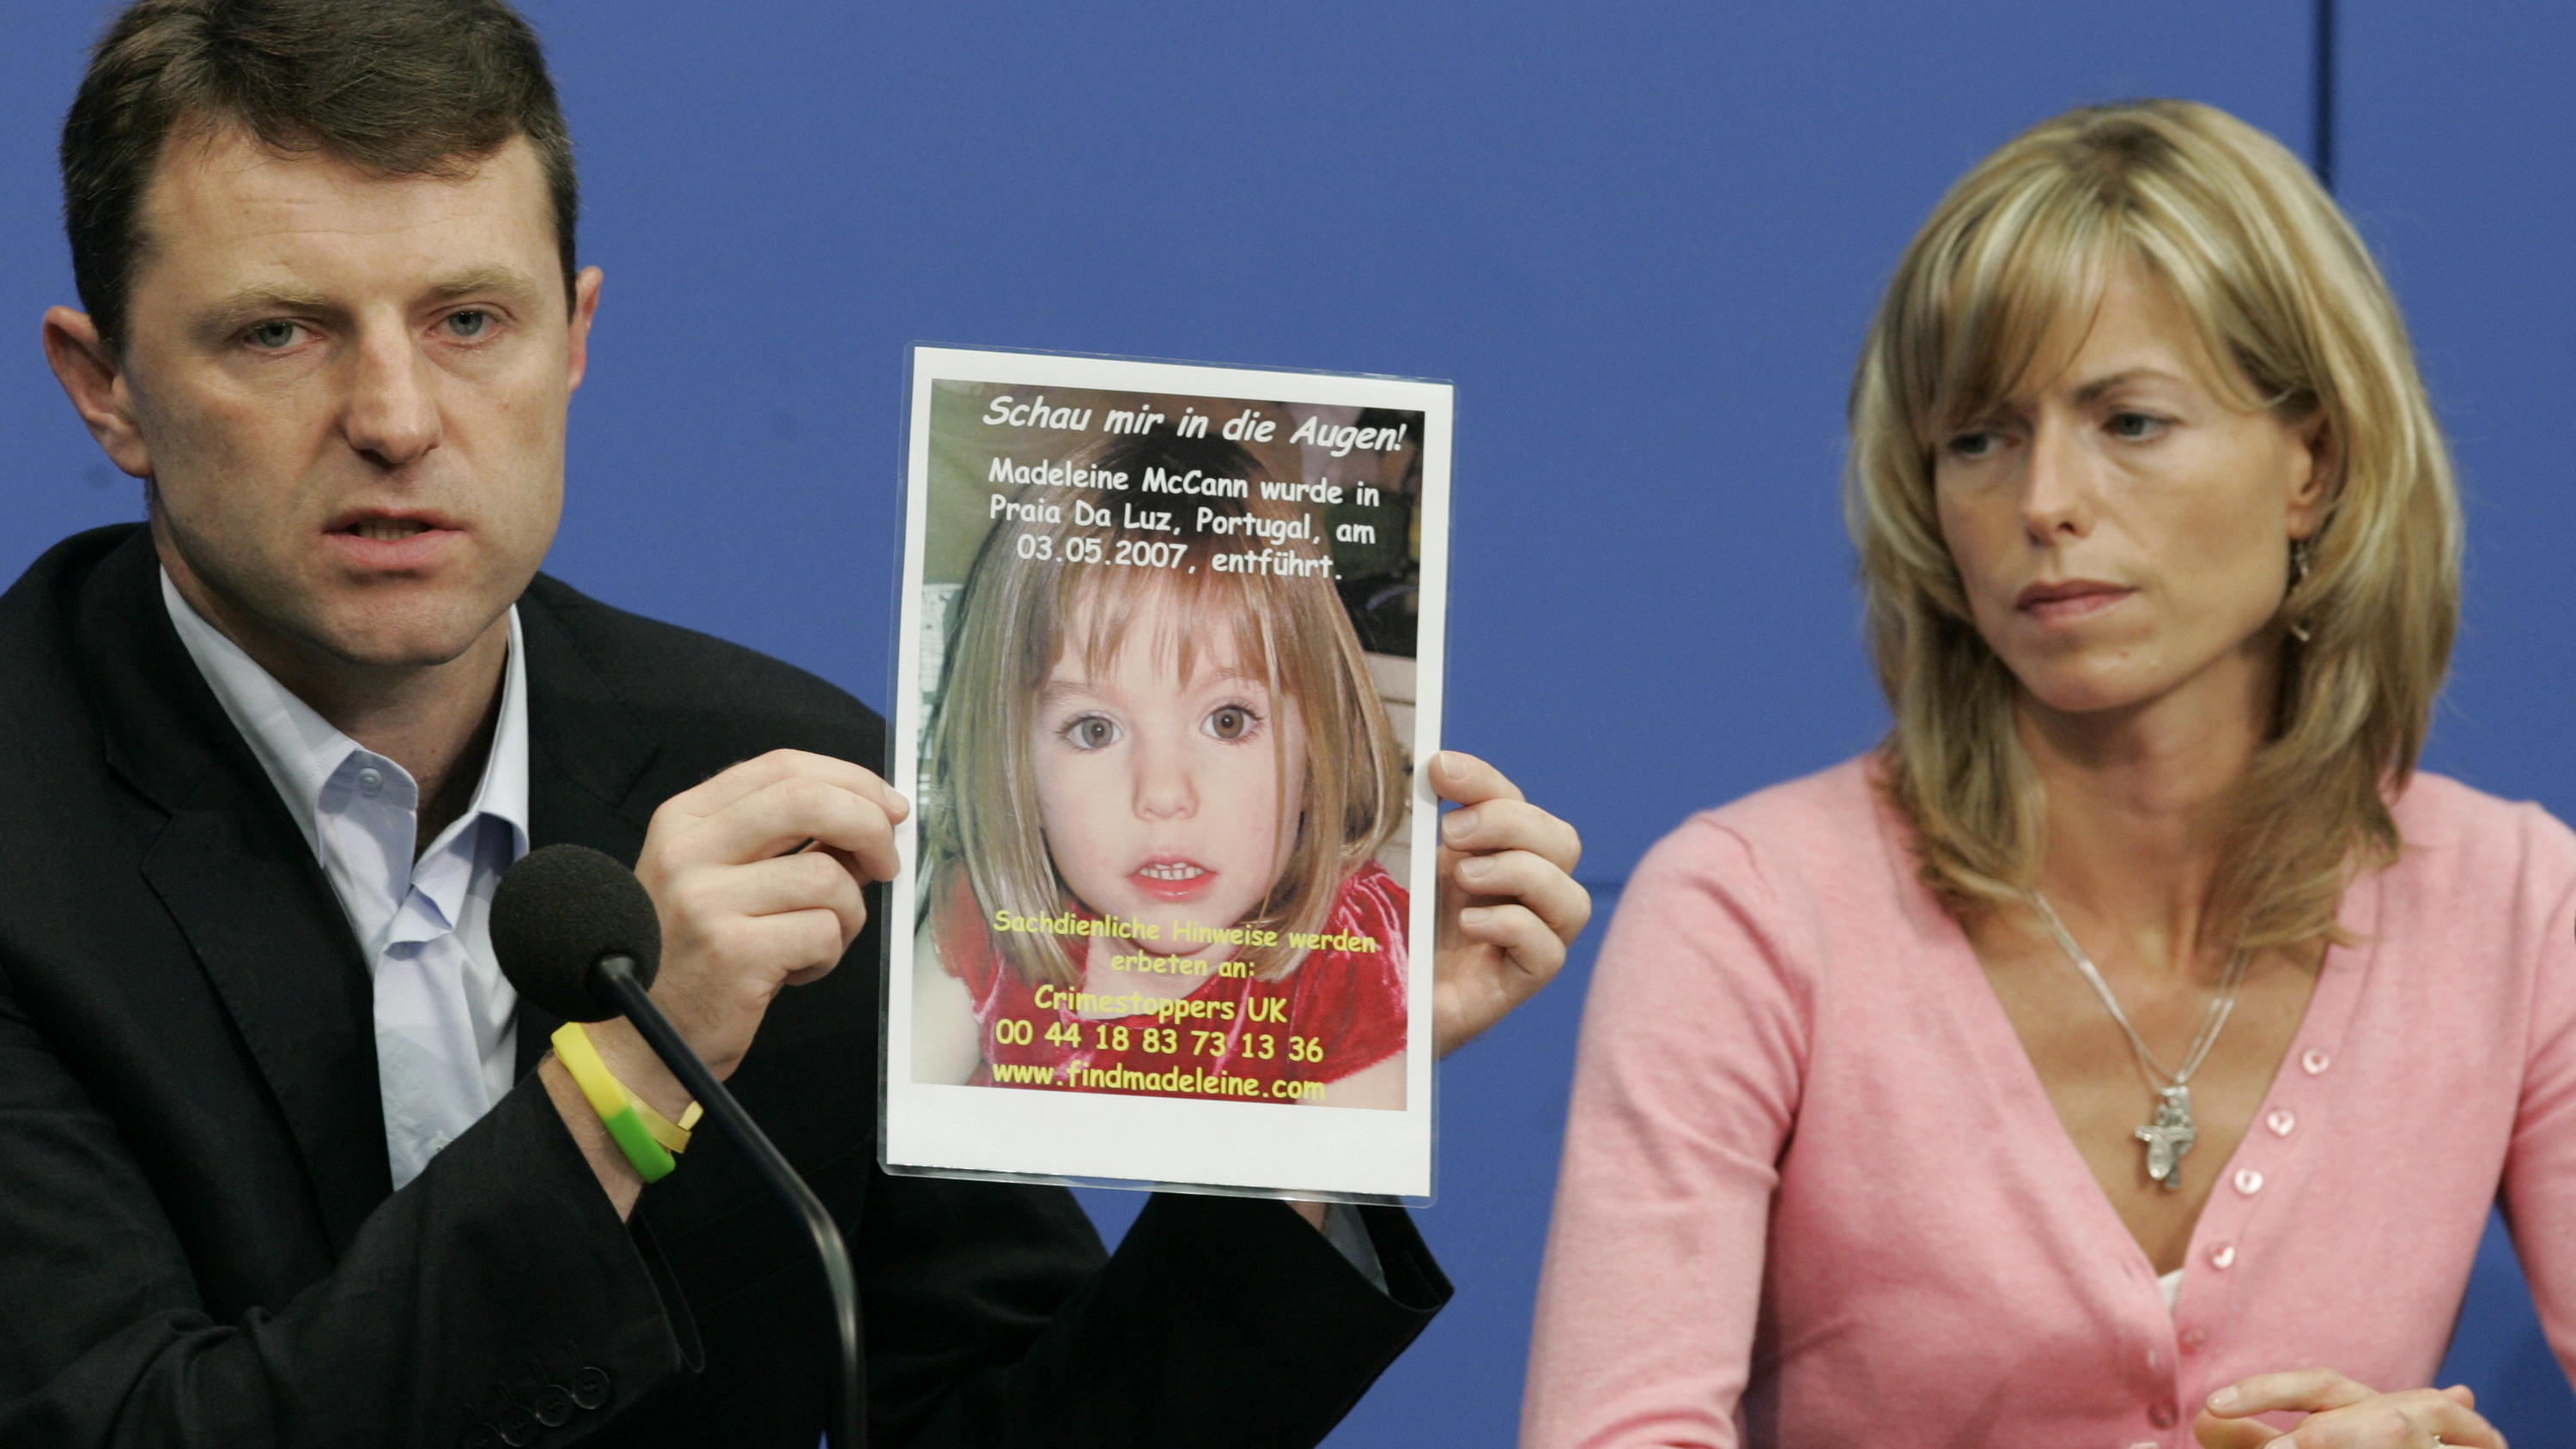 ARCHIV - 06.06.2007, Berlin: Kate und Gerry McCann zeigen während einer Pressekonferenz ein Bild ihrer verschwundenen Tochter Madeleine (Maddie). Im Fall des vor gut 13 Jahren verschwundenen britischen Mädchens Maddie ermittelt die Staatsanwaltschaft